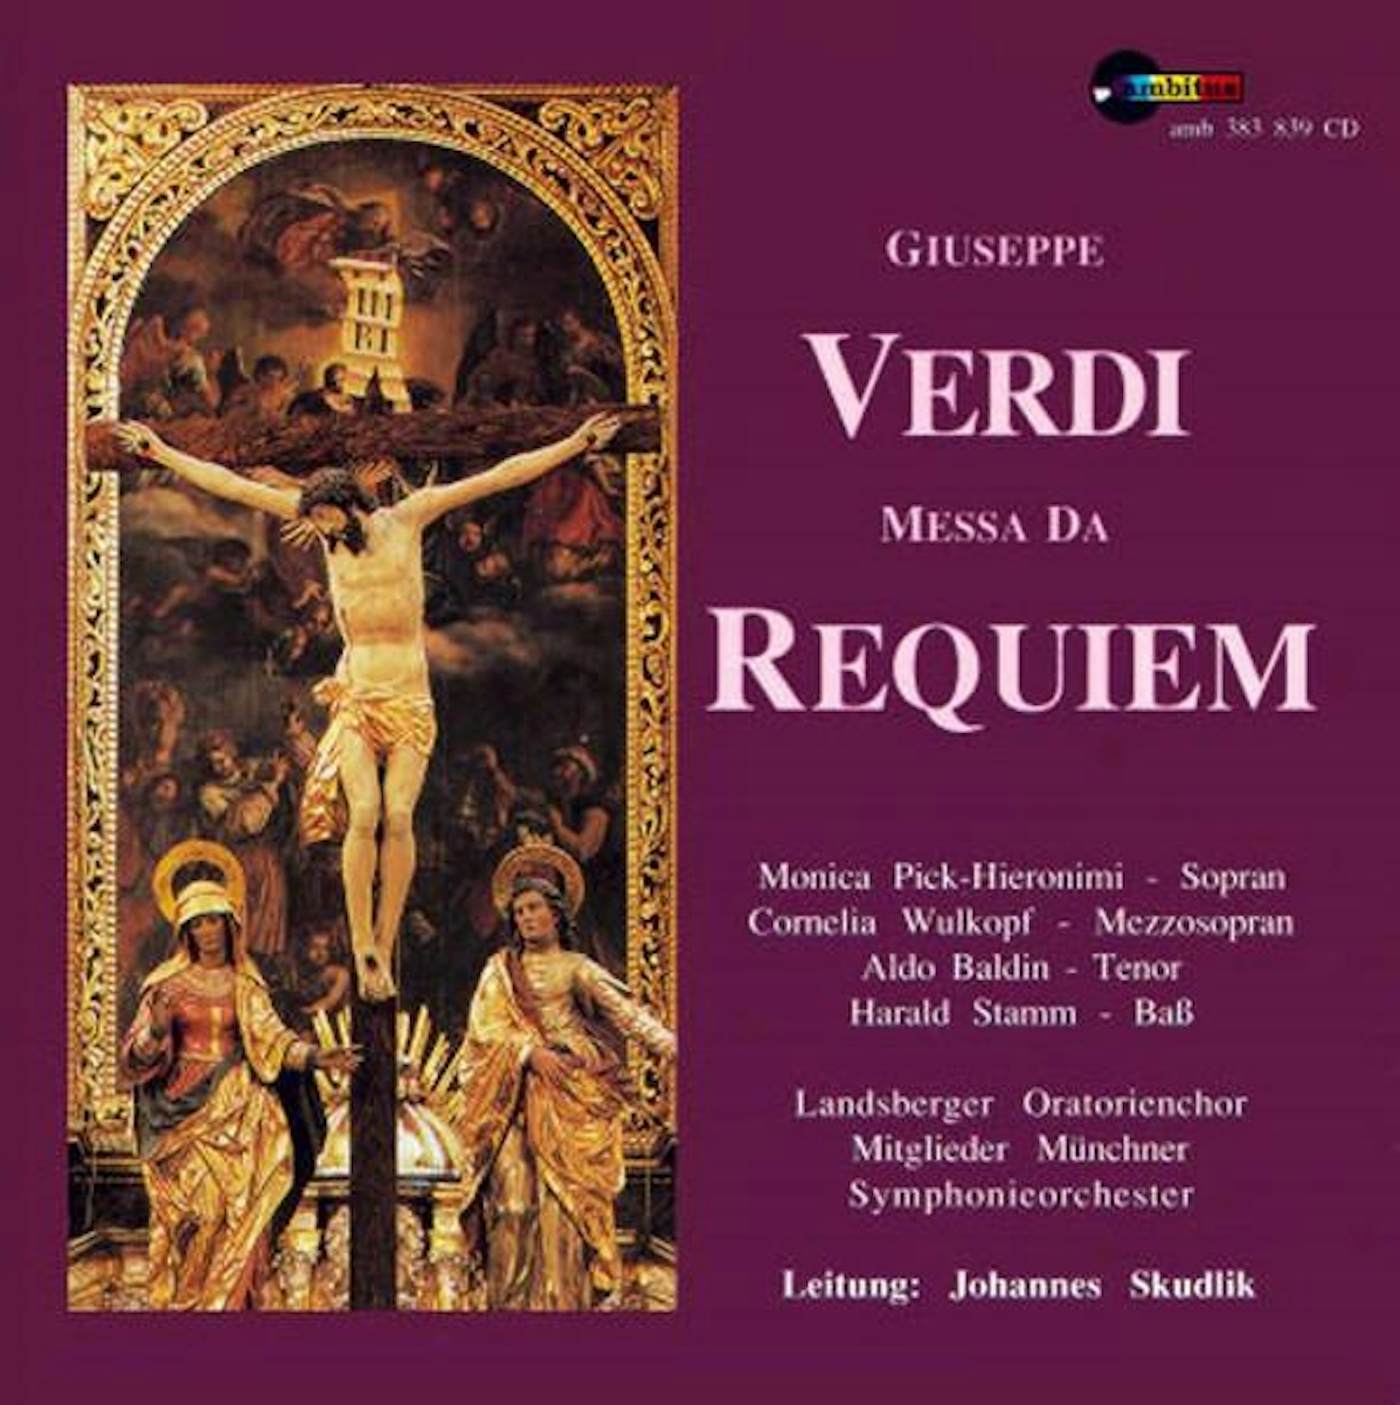 Donizetti: Messa da Requiem - Album by Gaetano Donizetti